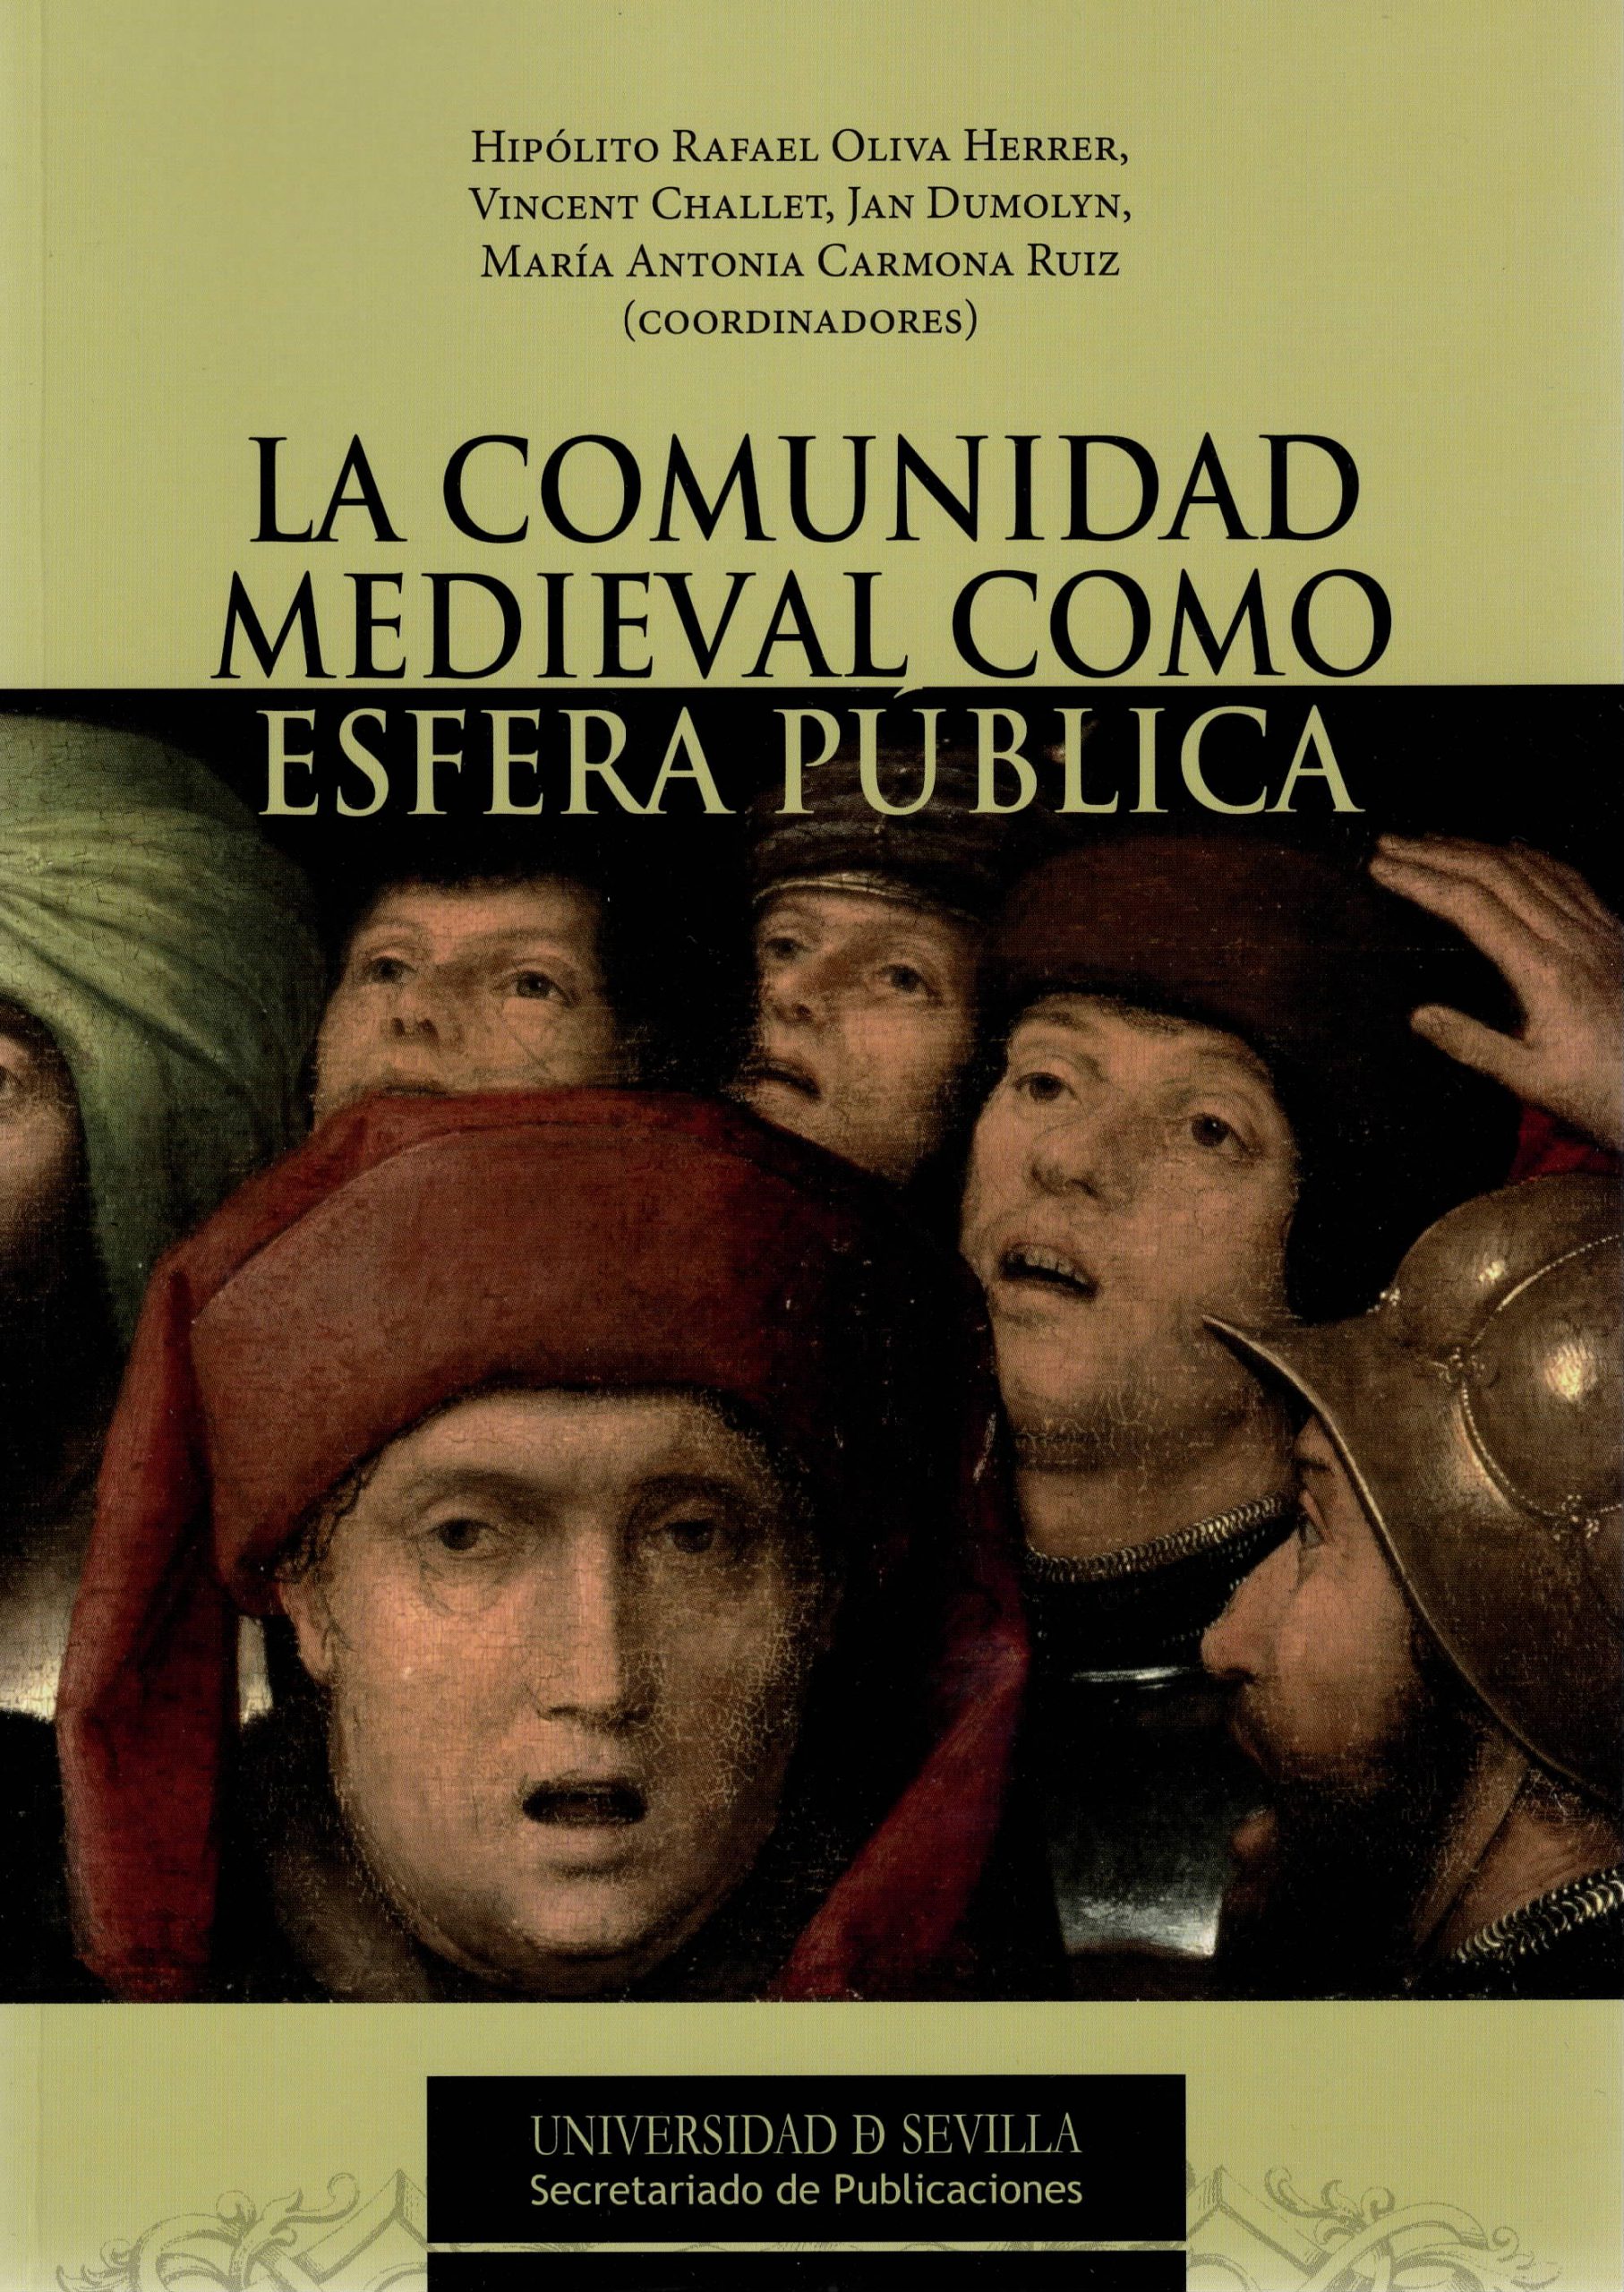 La comunidade medieval como esfera pública